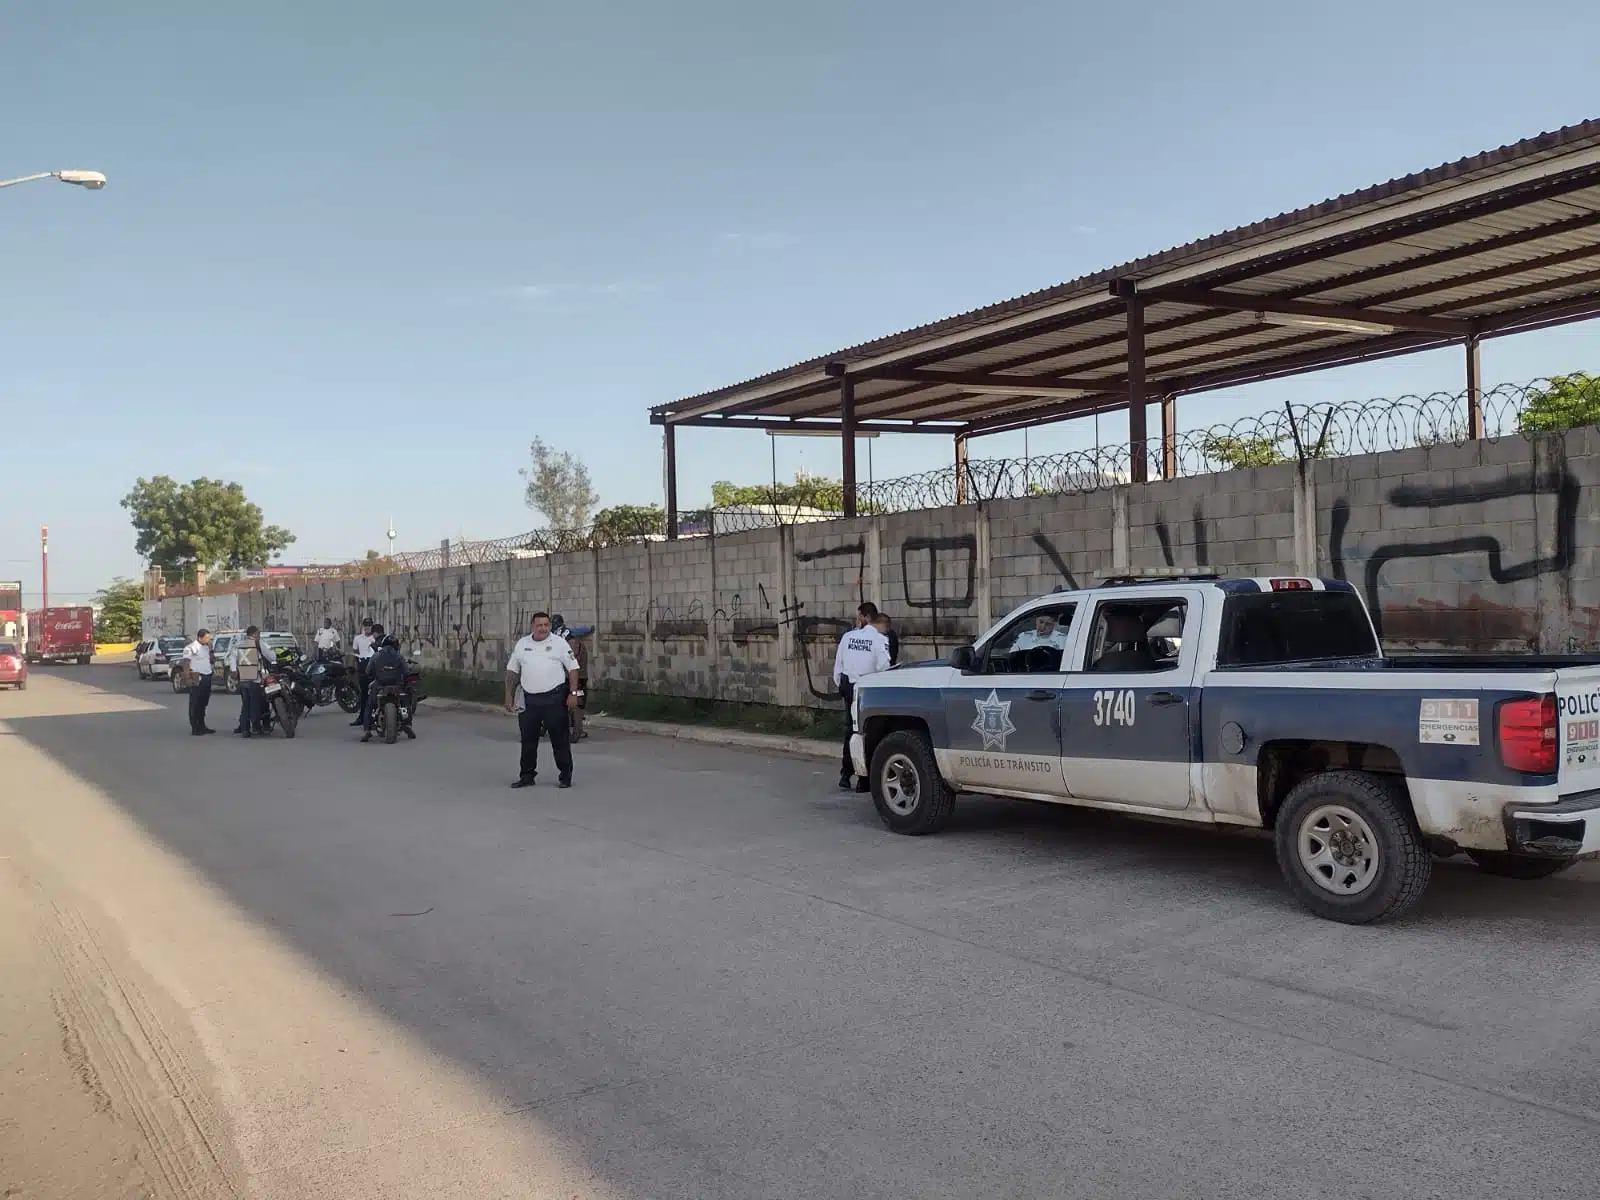 Transito municipal quita de las calles del puerto de mazatlán vehículos en condición de abandono y también aseguró 43 motocicletas.